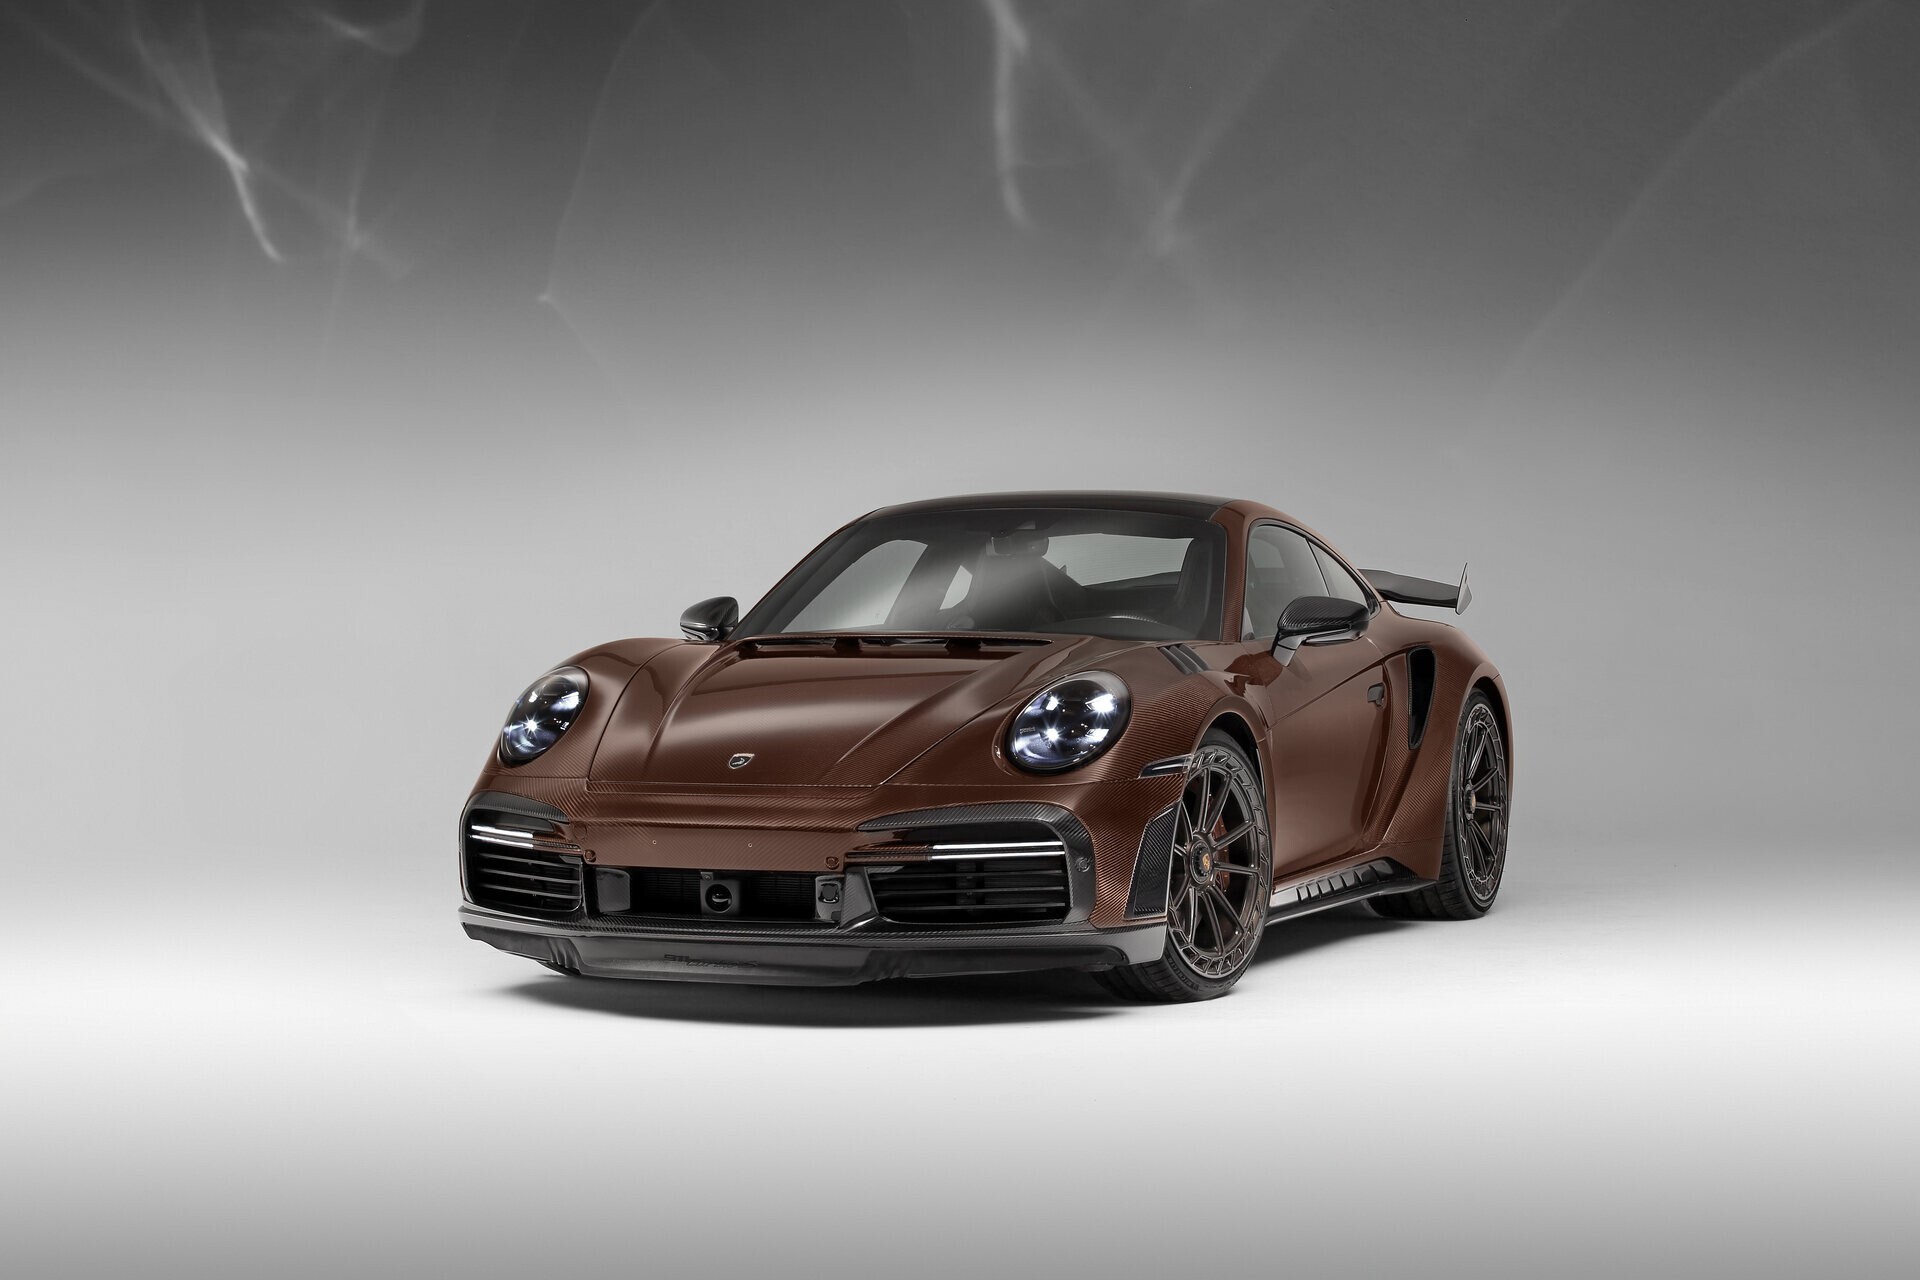 TopCar показал эксклюзивный Porsche 911 Turbo S в коричневом углепластике